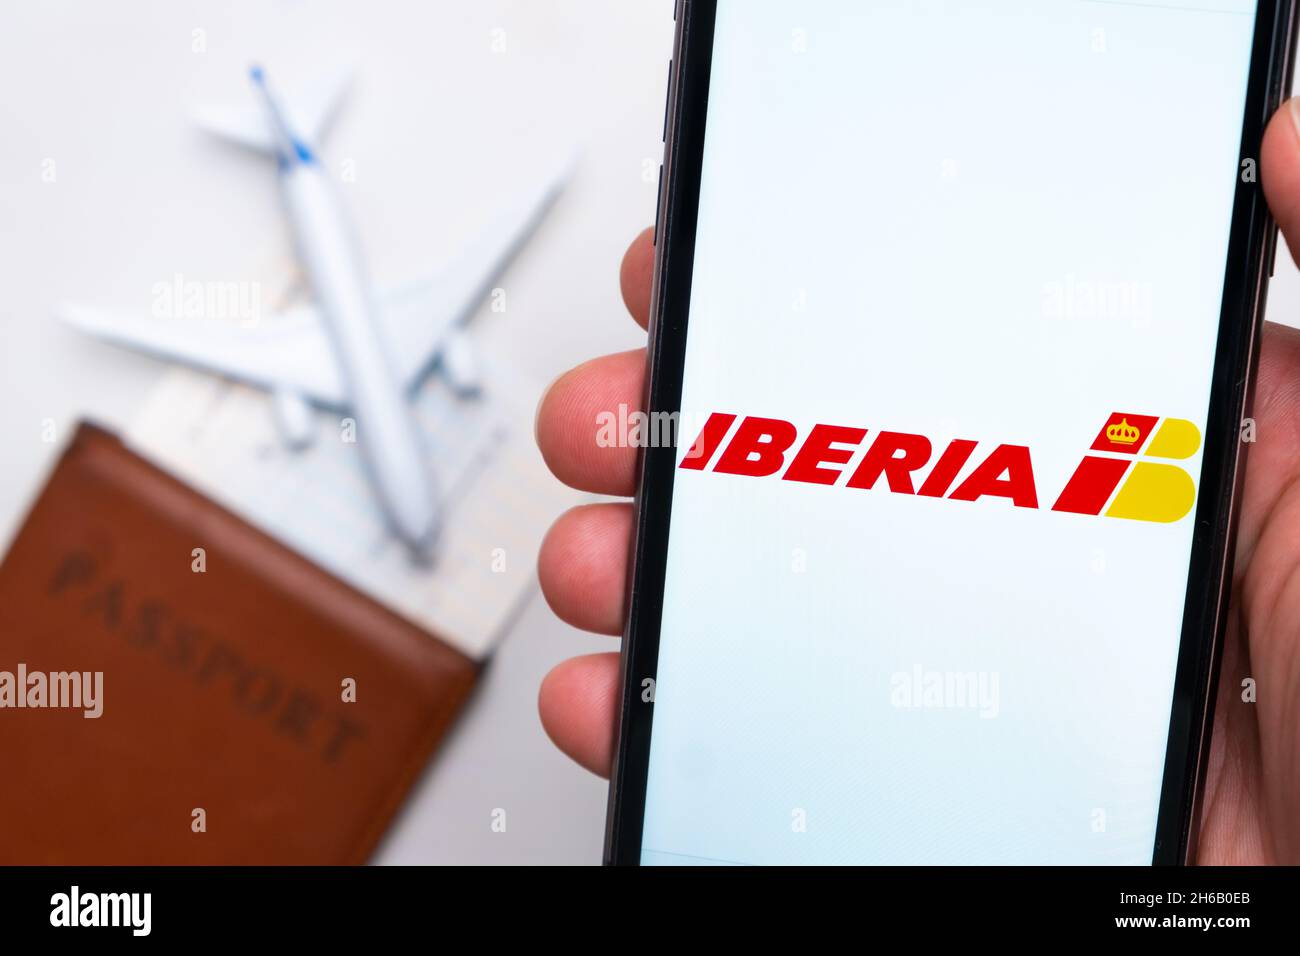 Iberia compagnie aeree logo sulla schermata del telefono cellulare in mano uomo sullo sfondo del passaporto, carta d'imbarco e aereo, settembre 2021, San Francisco, USA. Foto Stock